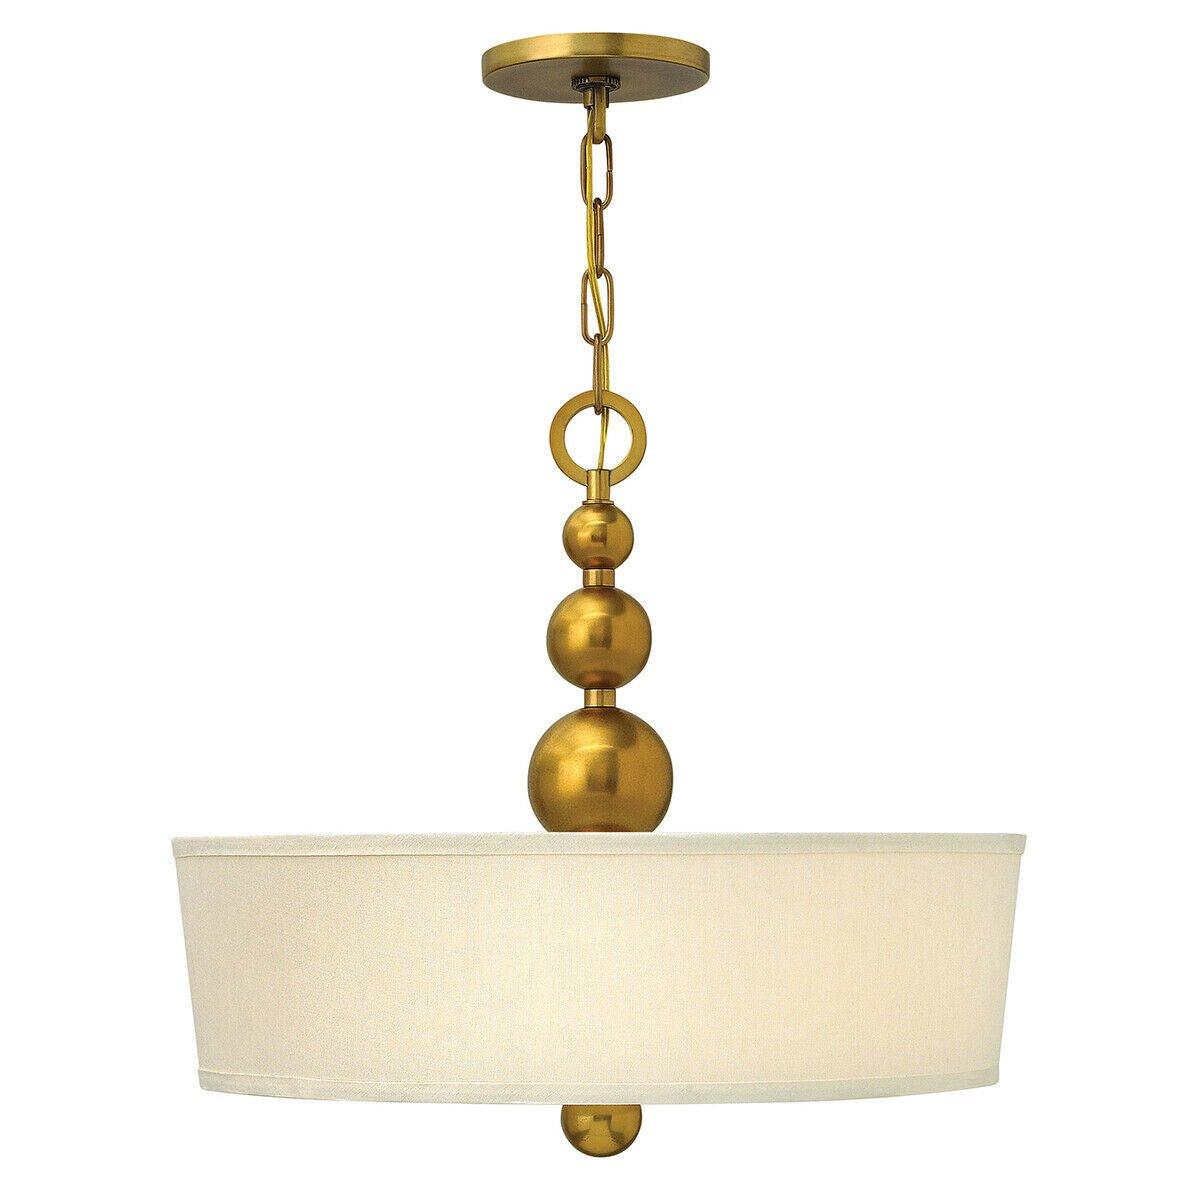 3 Bulb Ceiling Pendant Light Fitting Vintage Brass LED E27 60W Bulb